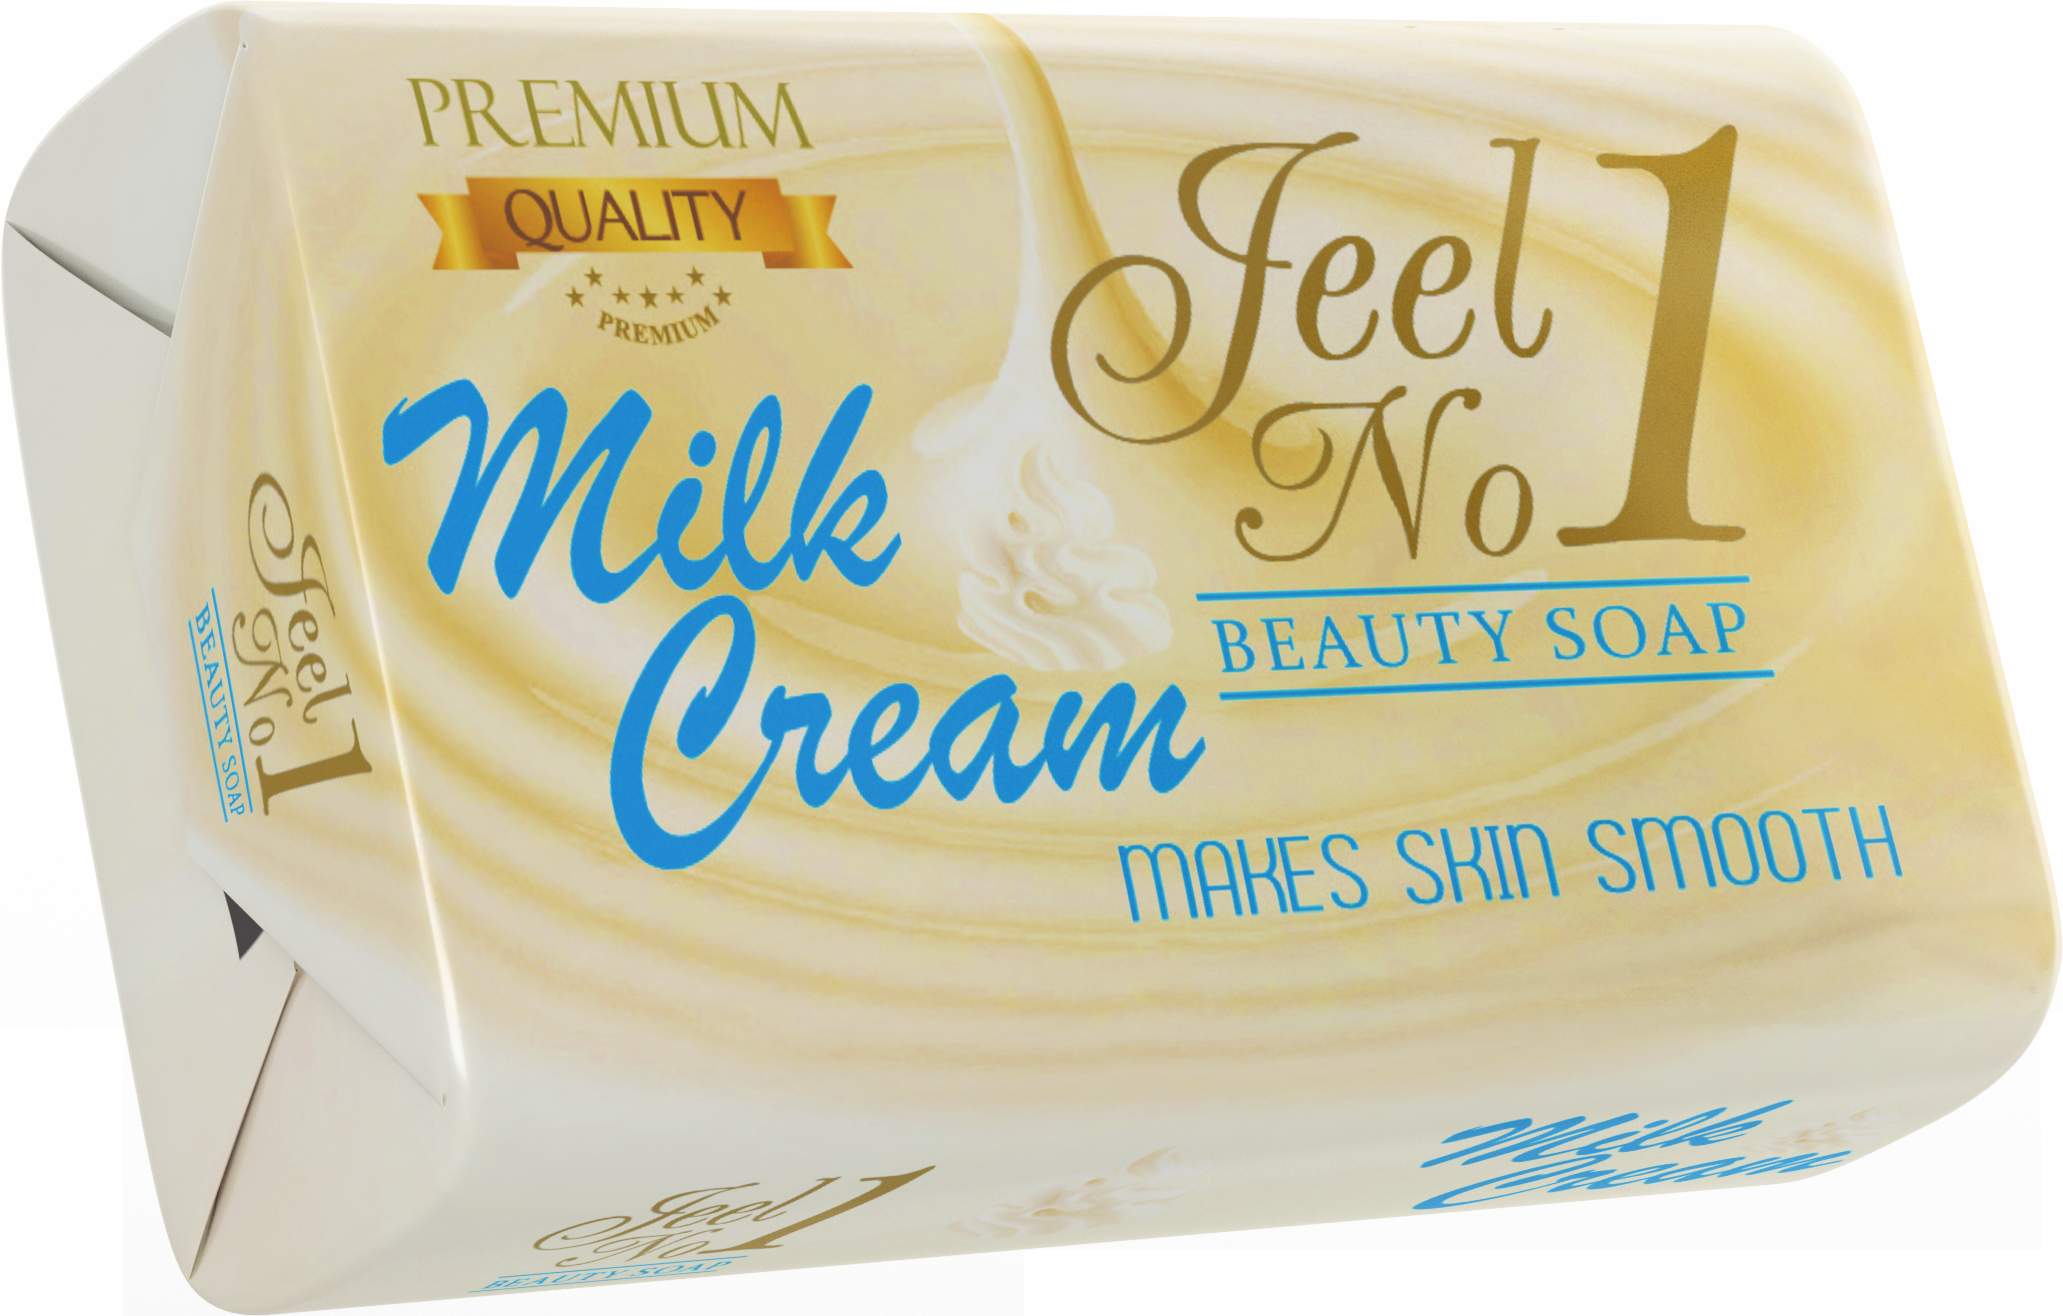 Jeel N0.1 White Beauty Soap